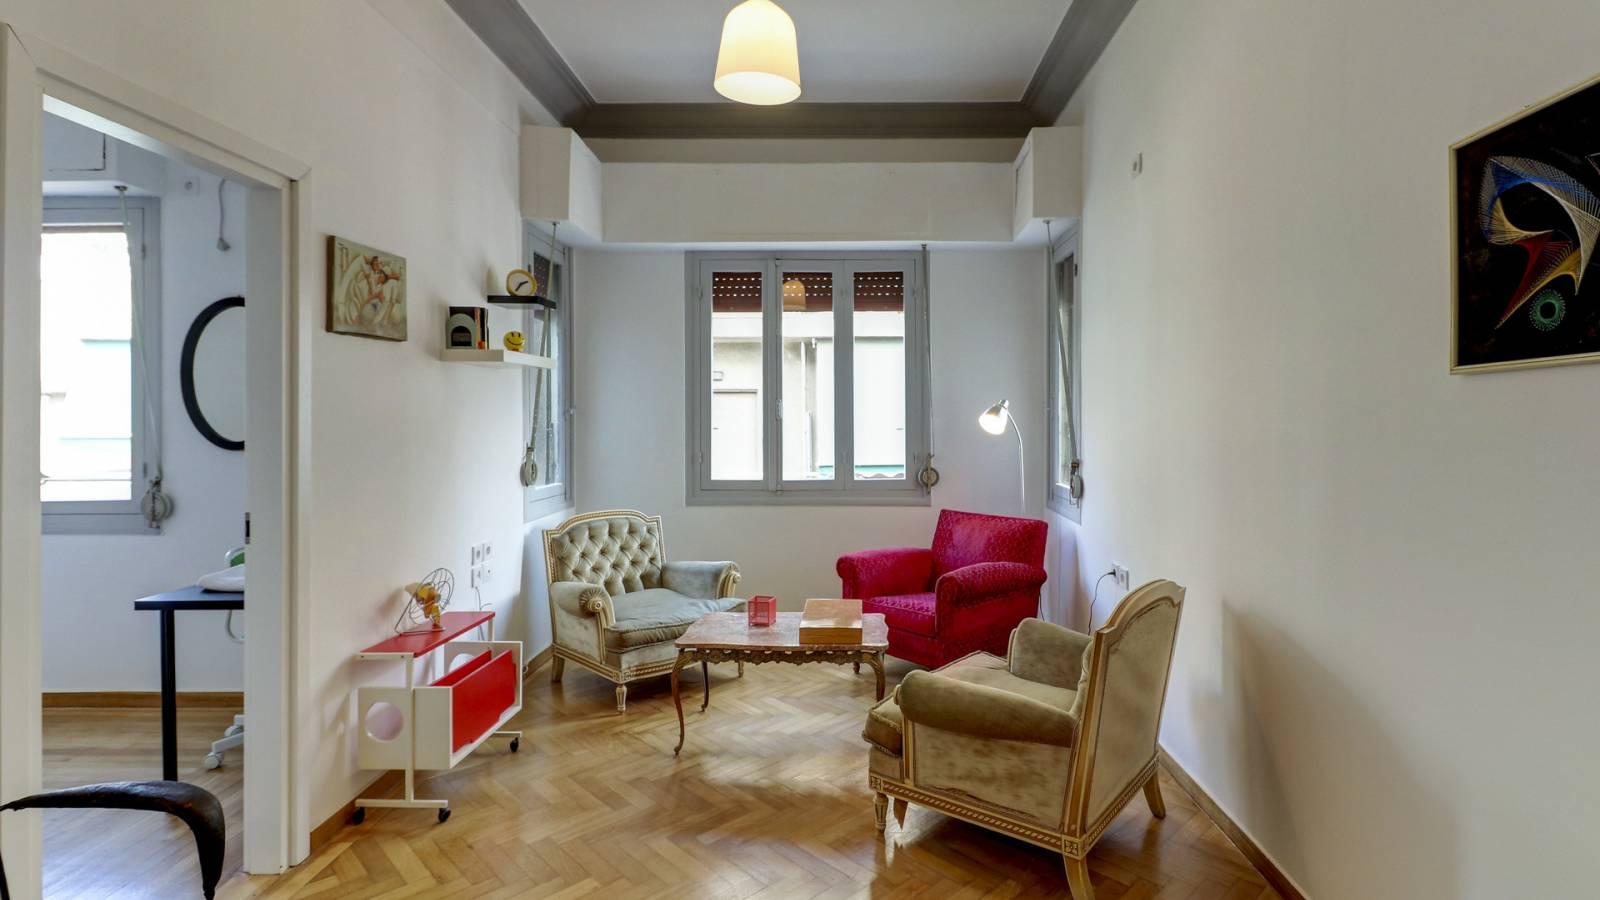 Salón moderno y espacioso en un apartamento de Atenas